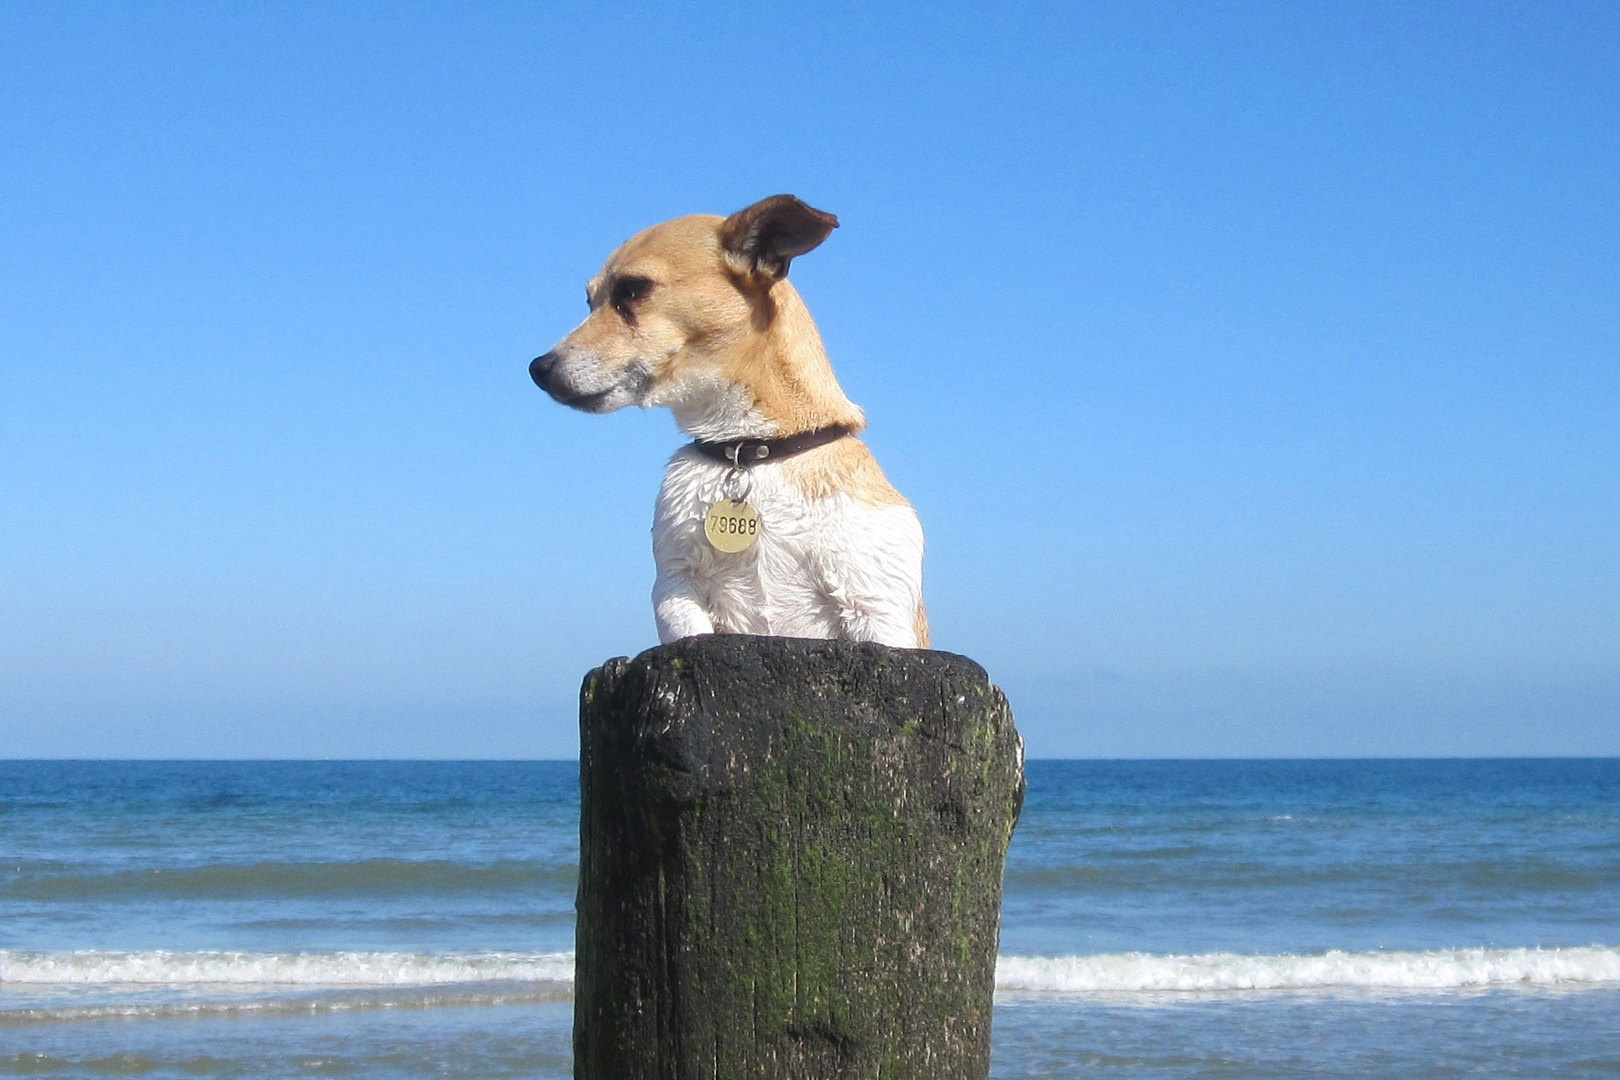 Ferienhaus mit Hund an der Nordsee buchen? LekkerNaarZee